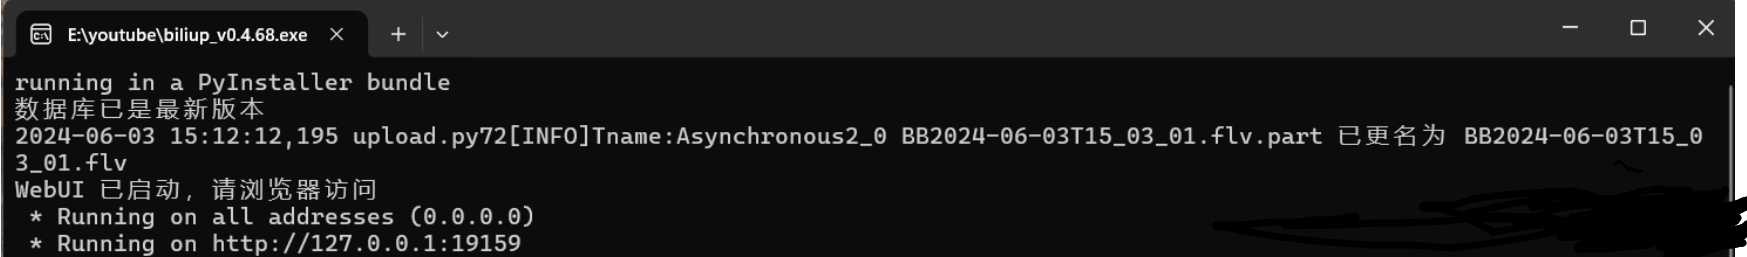 全自动录播、分p投稿工具 biliup v0.4.68 支持B站抖音快手虎牙等主流直播 实用软件 第2张